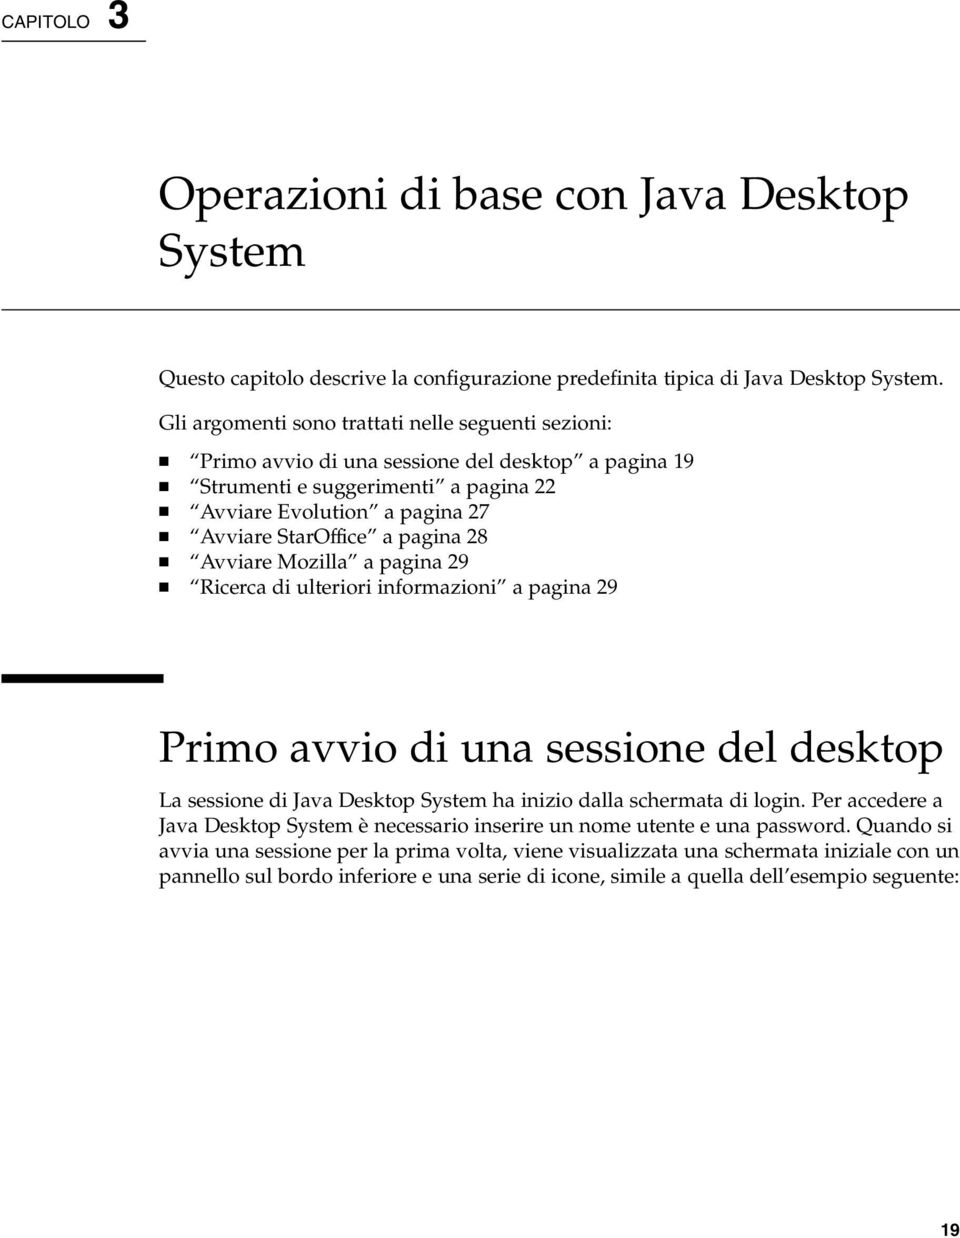 28 Avviare Mozilla a pagina 29 Ricerca di ulteriori informazioni a pagina 29 Primo avvio di una sessione del desktop La sessione di Java Desktop System ha inizio dalla schermata di login.